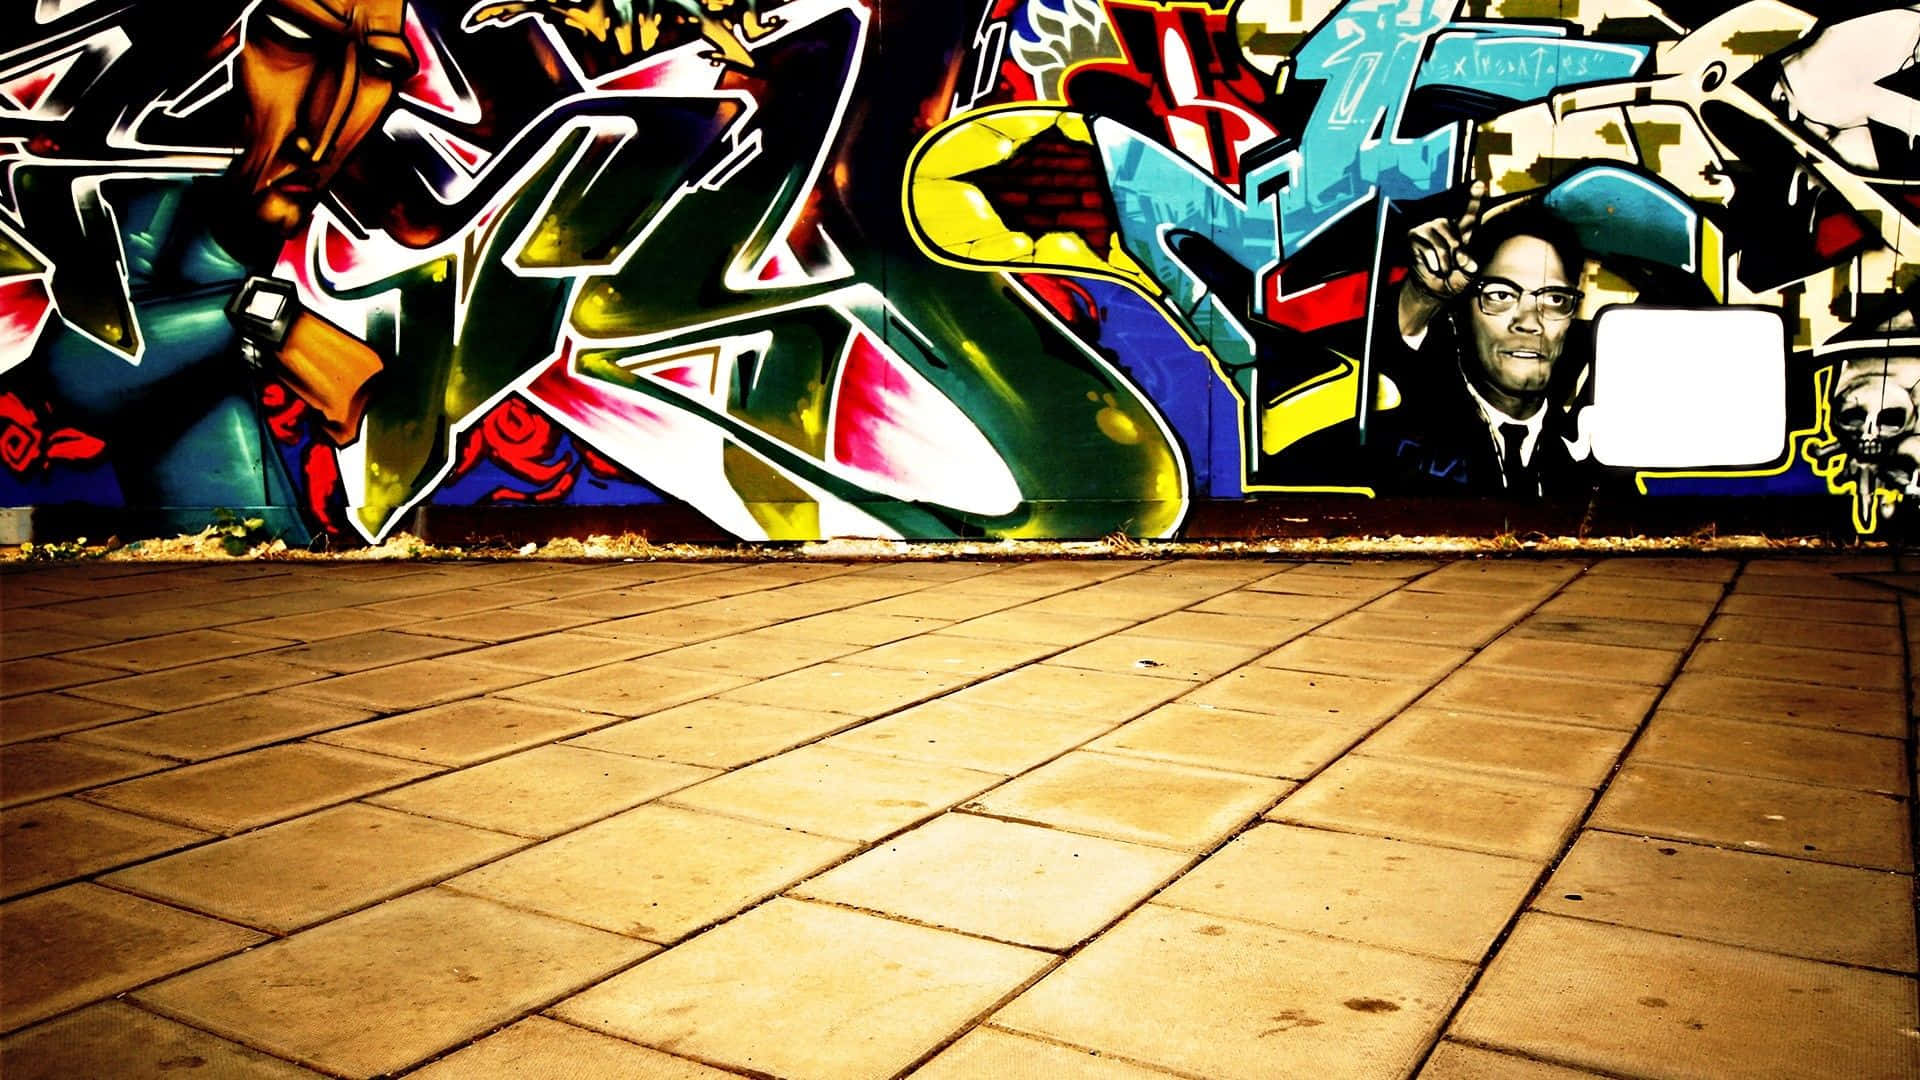 Colorful Patterns Of Graffiti Wall Art Wallpaper